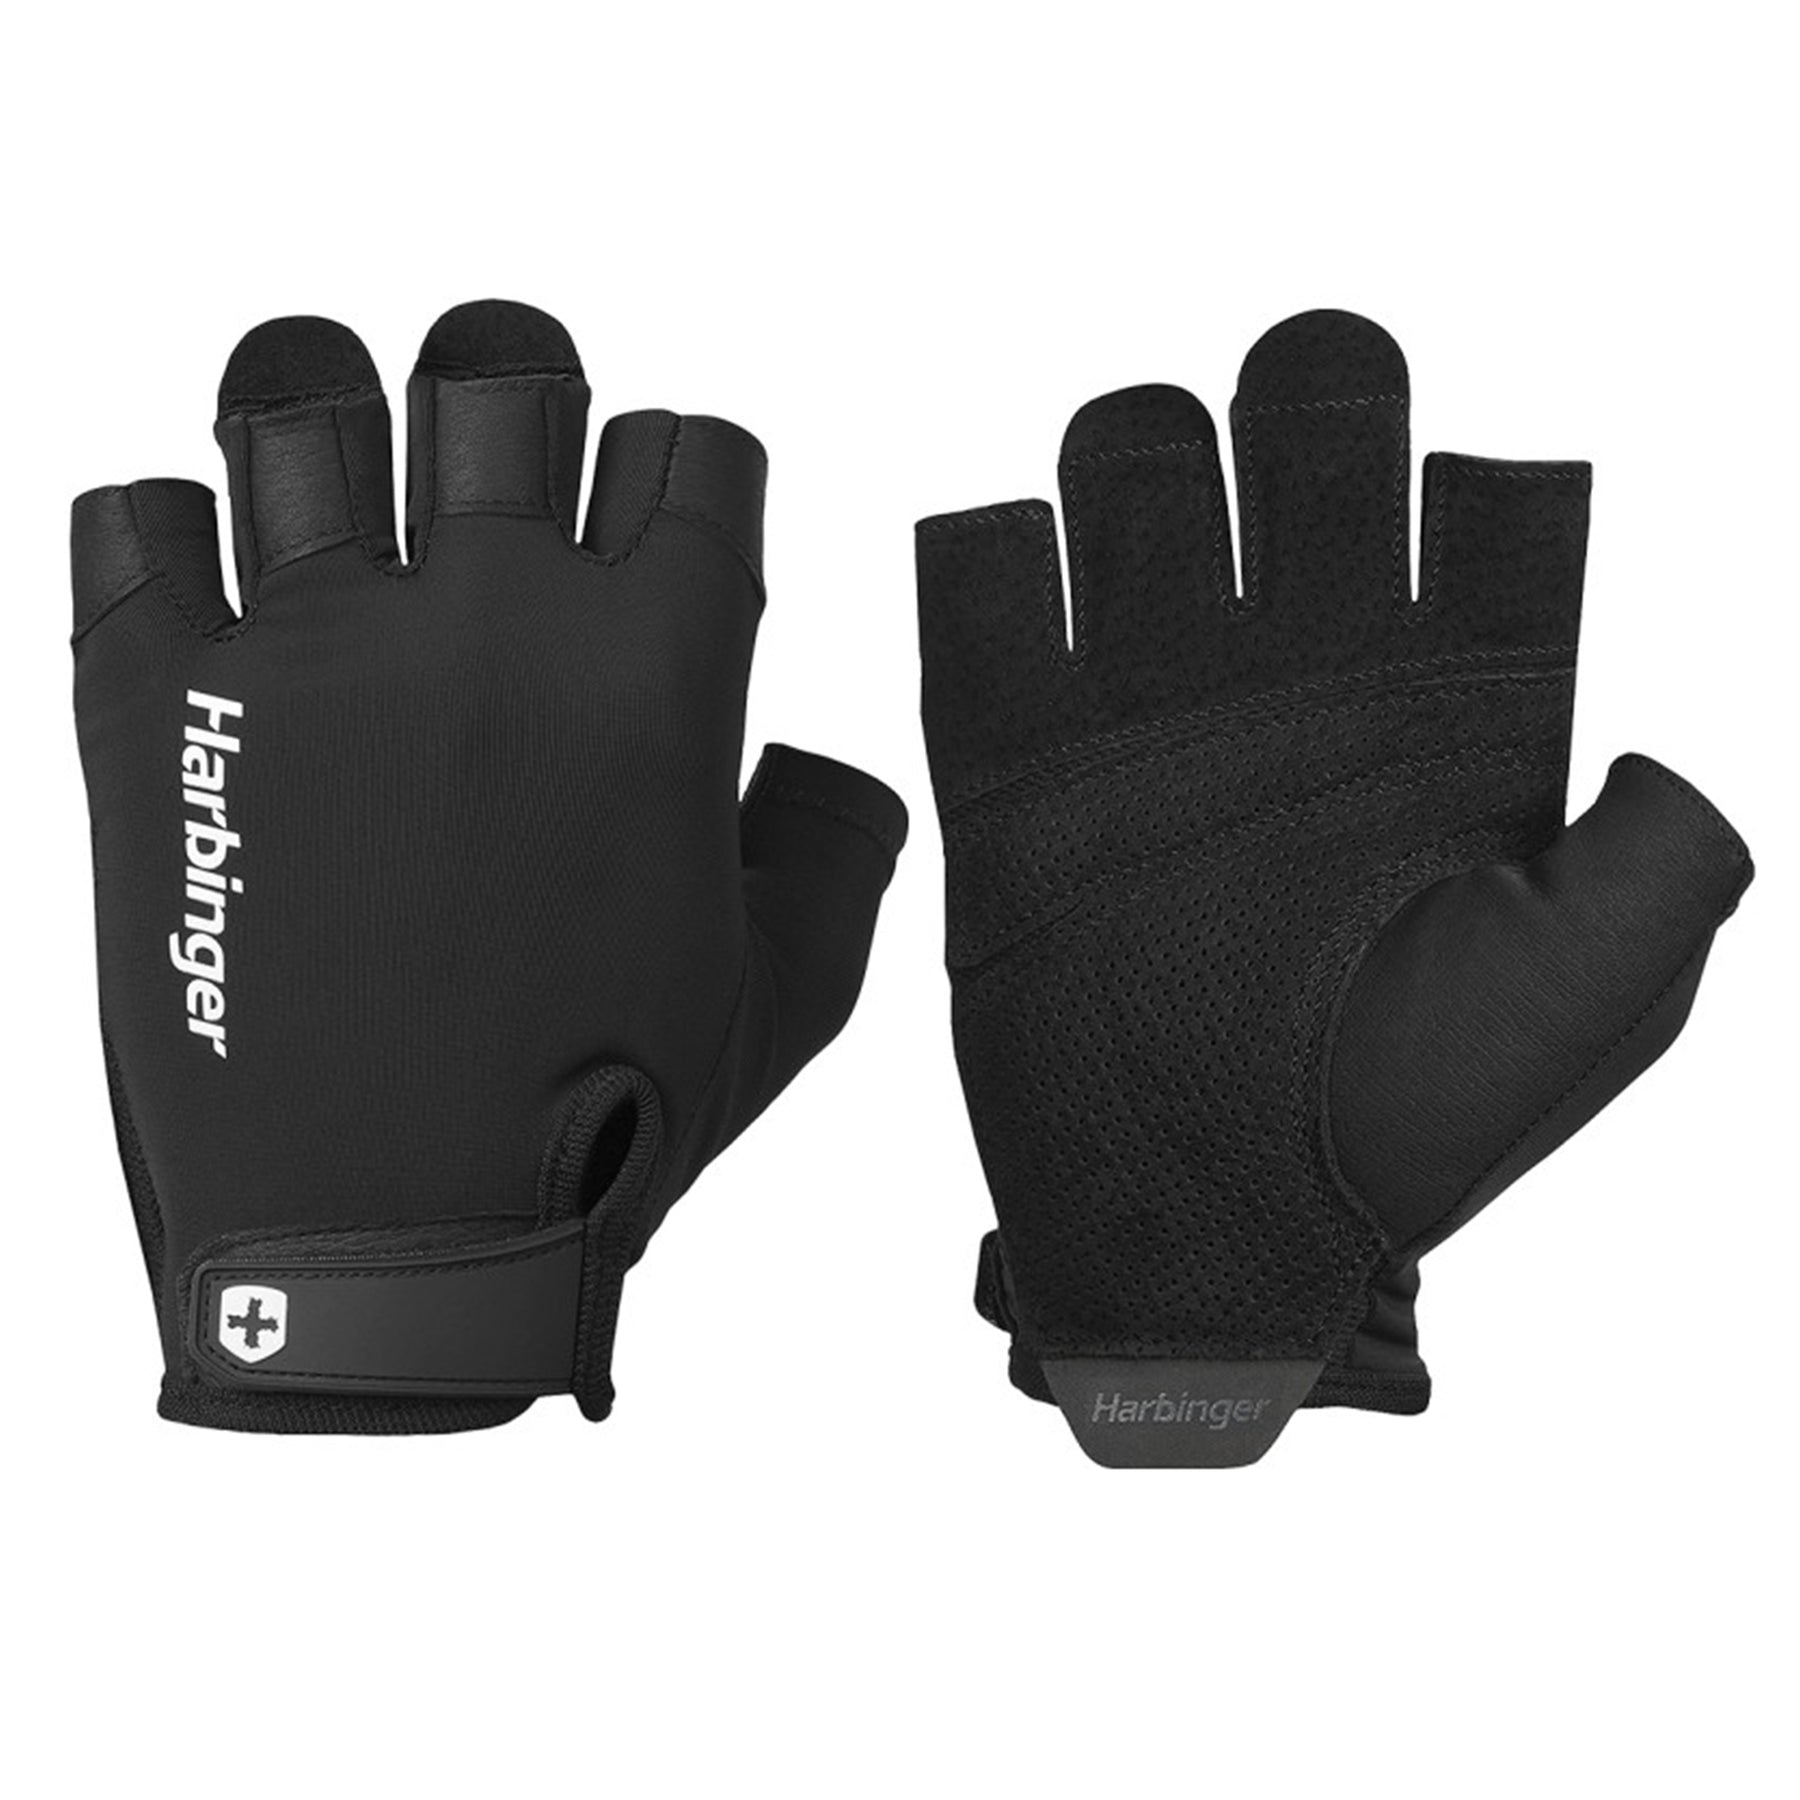 Harbinger Men’s Pro Gloves 2.0